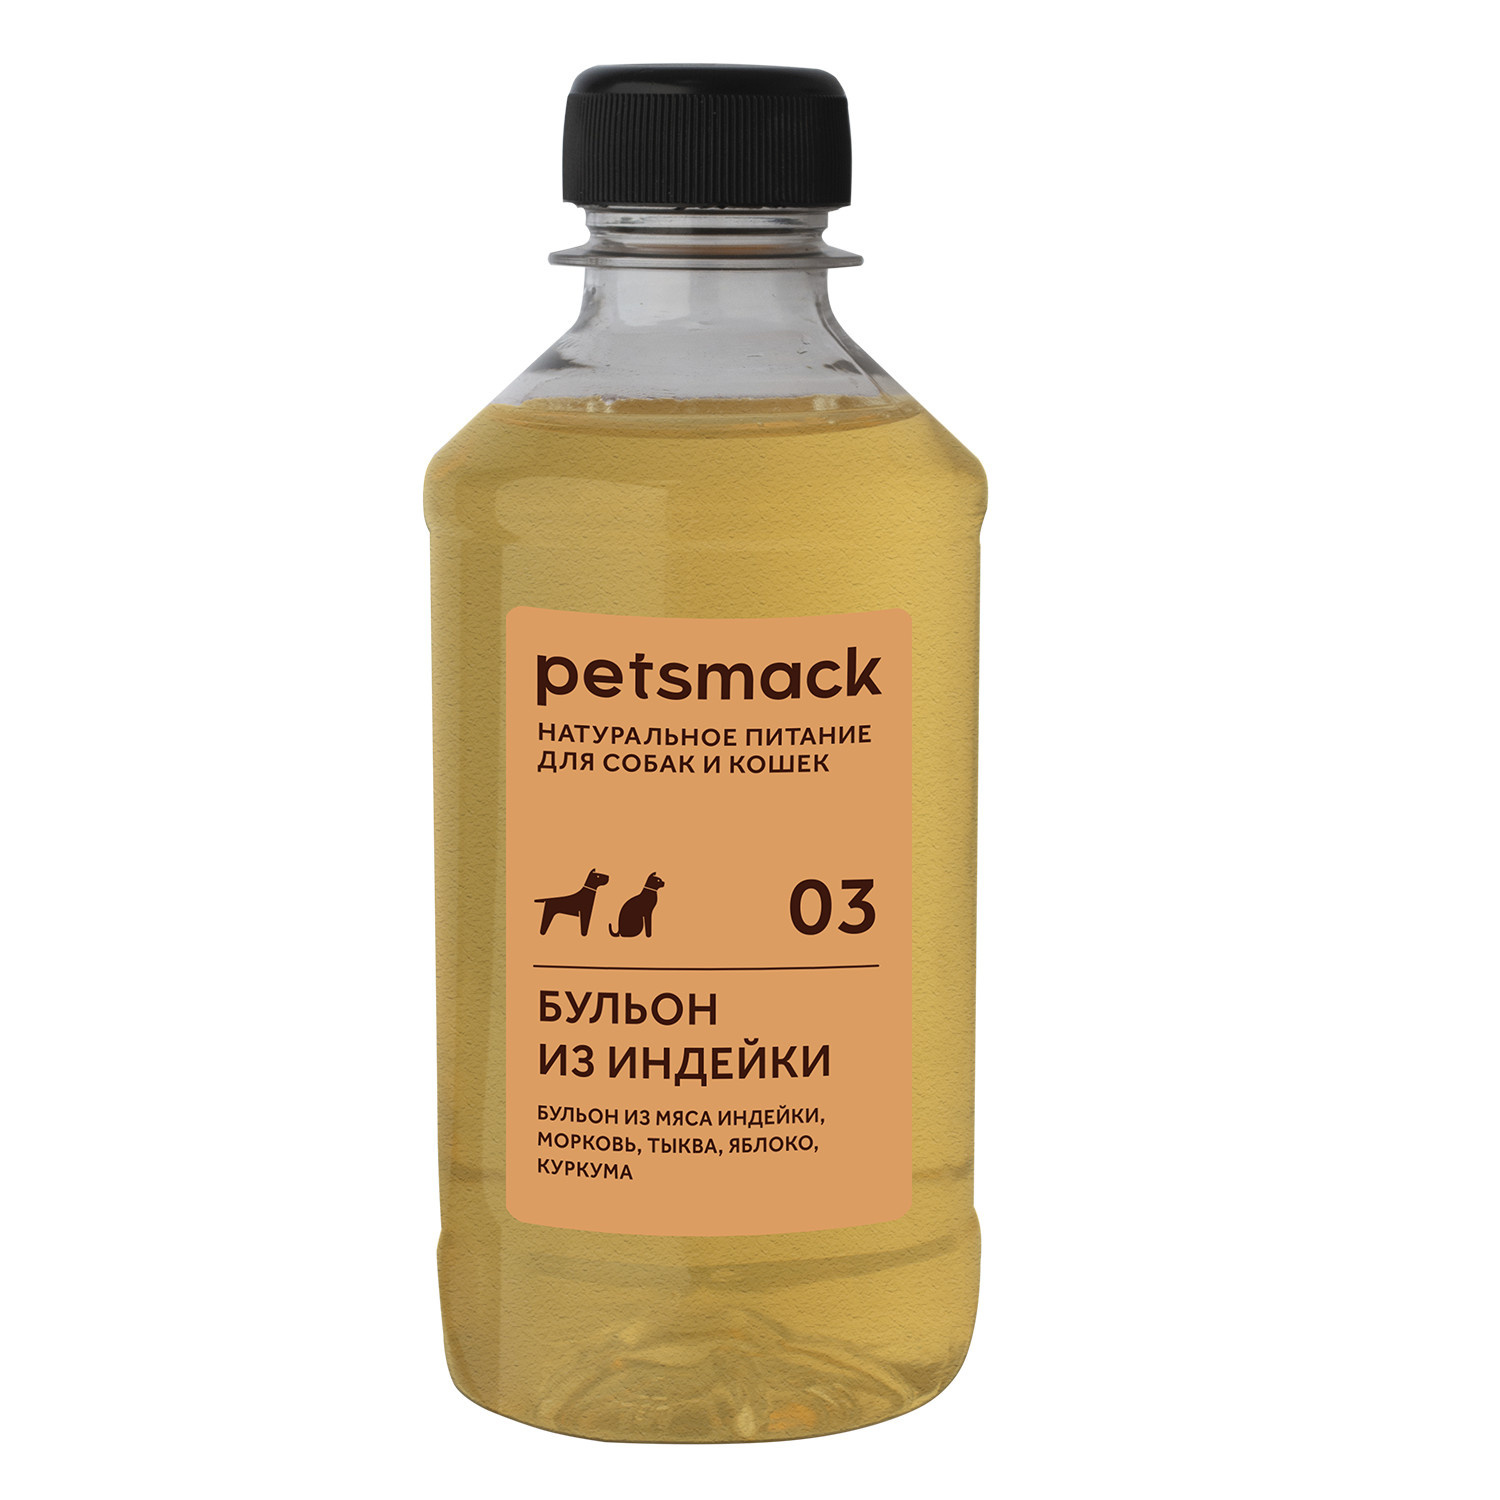 цена Petsmack Petsmack бульон из индейки (260 г)